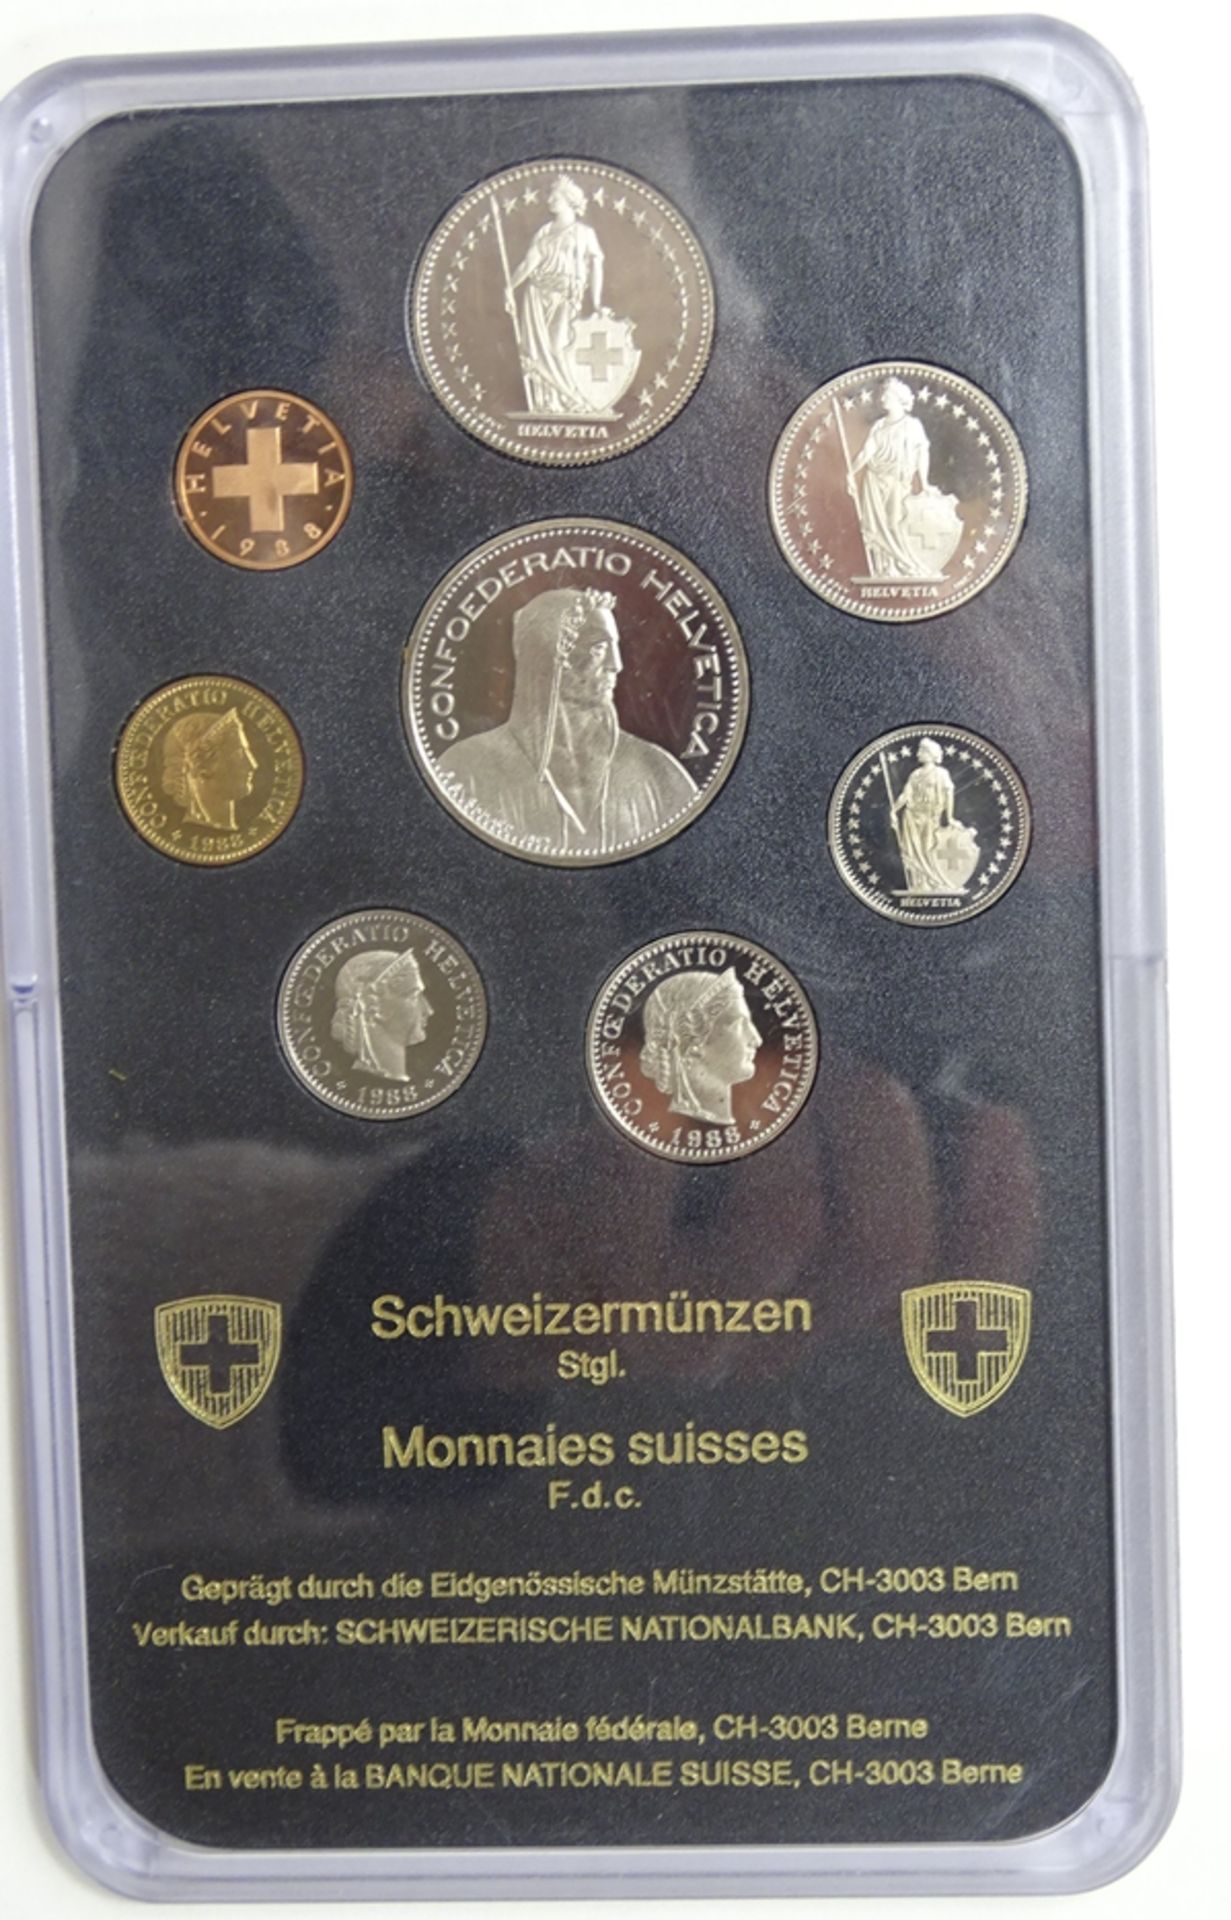 Münzsatz Schweizer Franken 1988, 8,86 Fr., in Schatulle